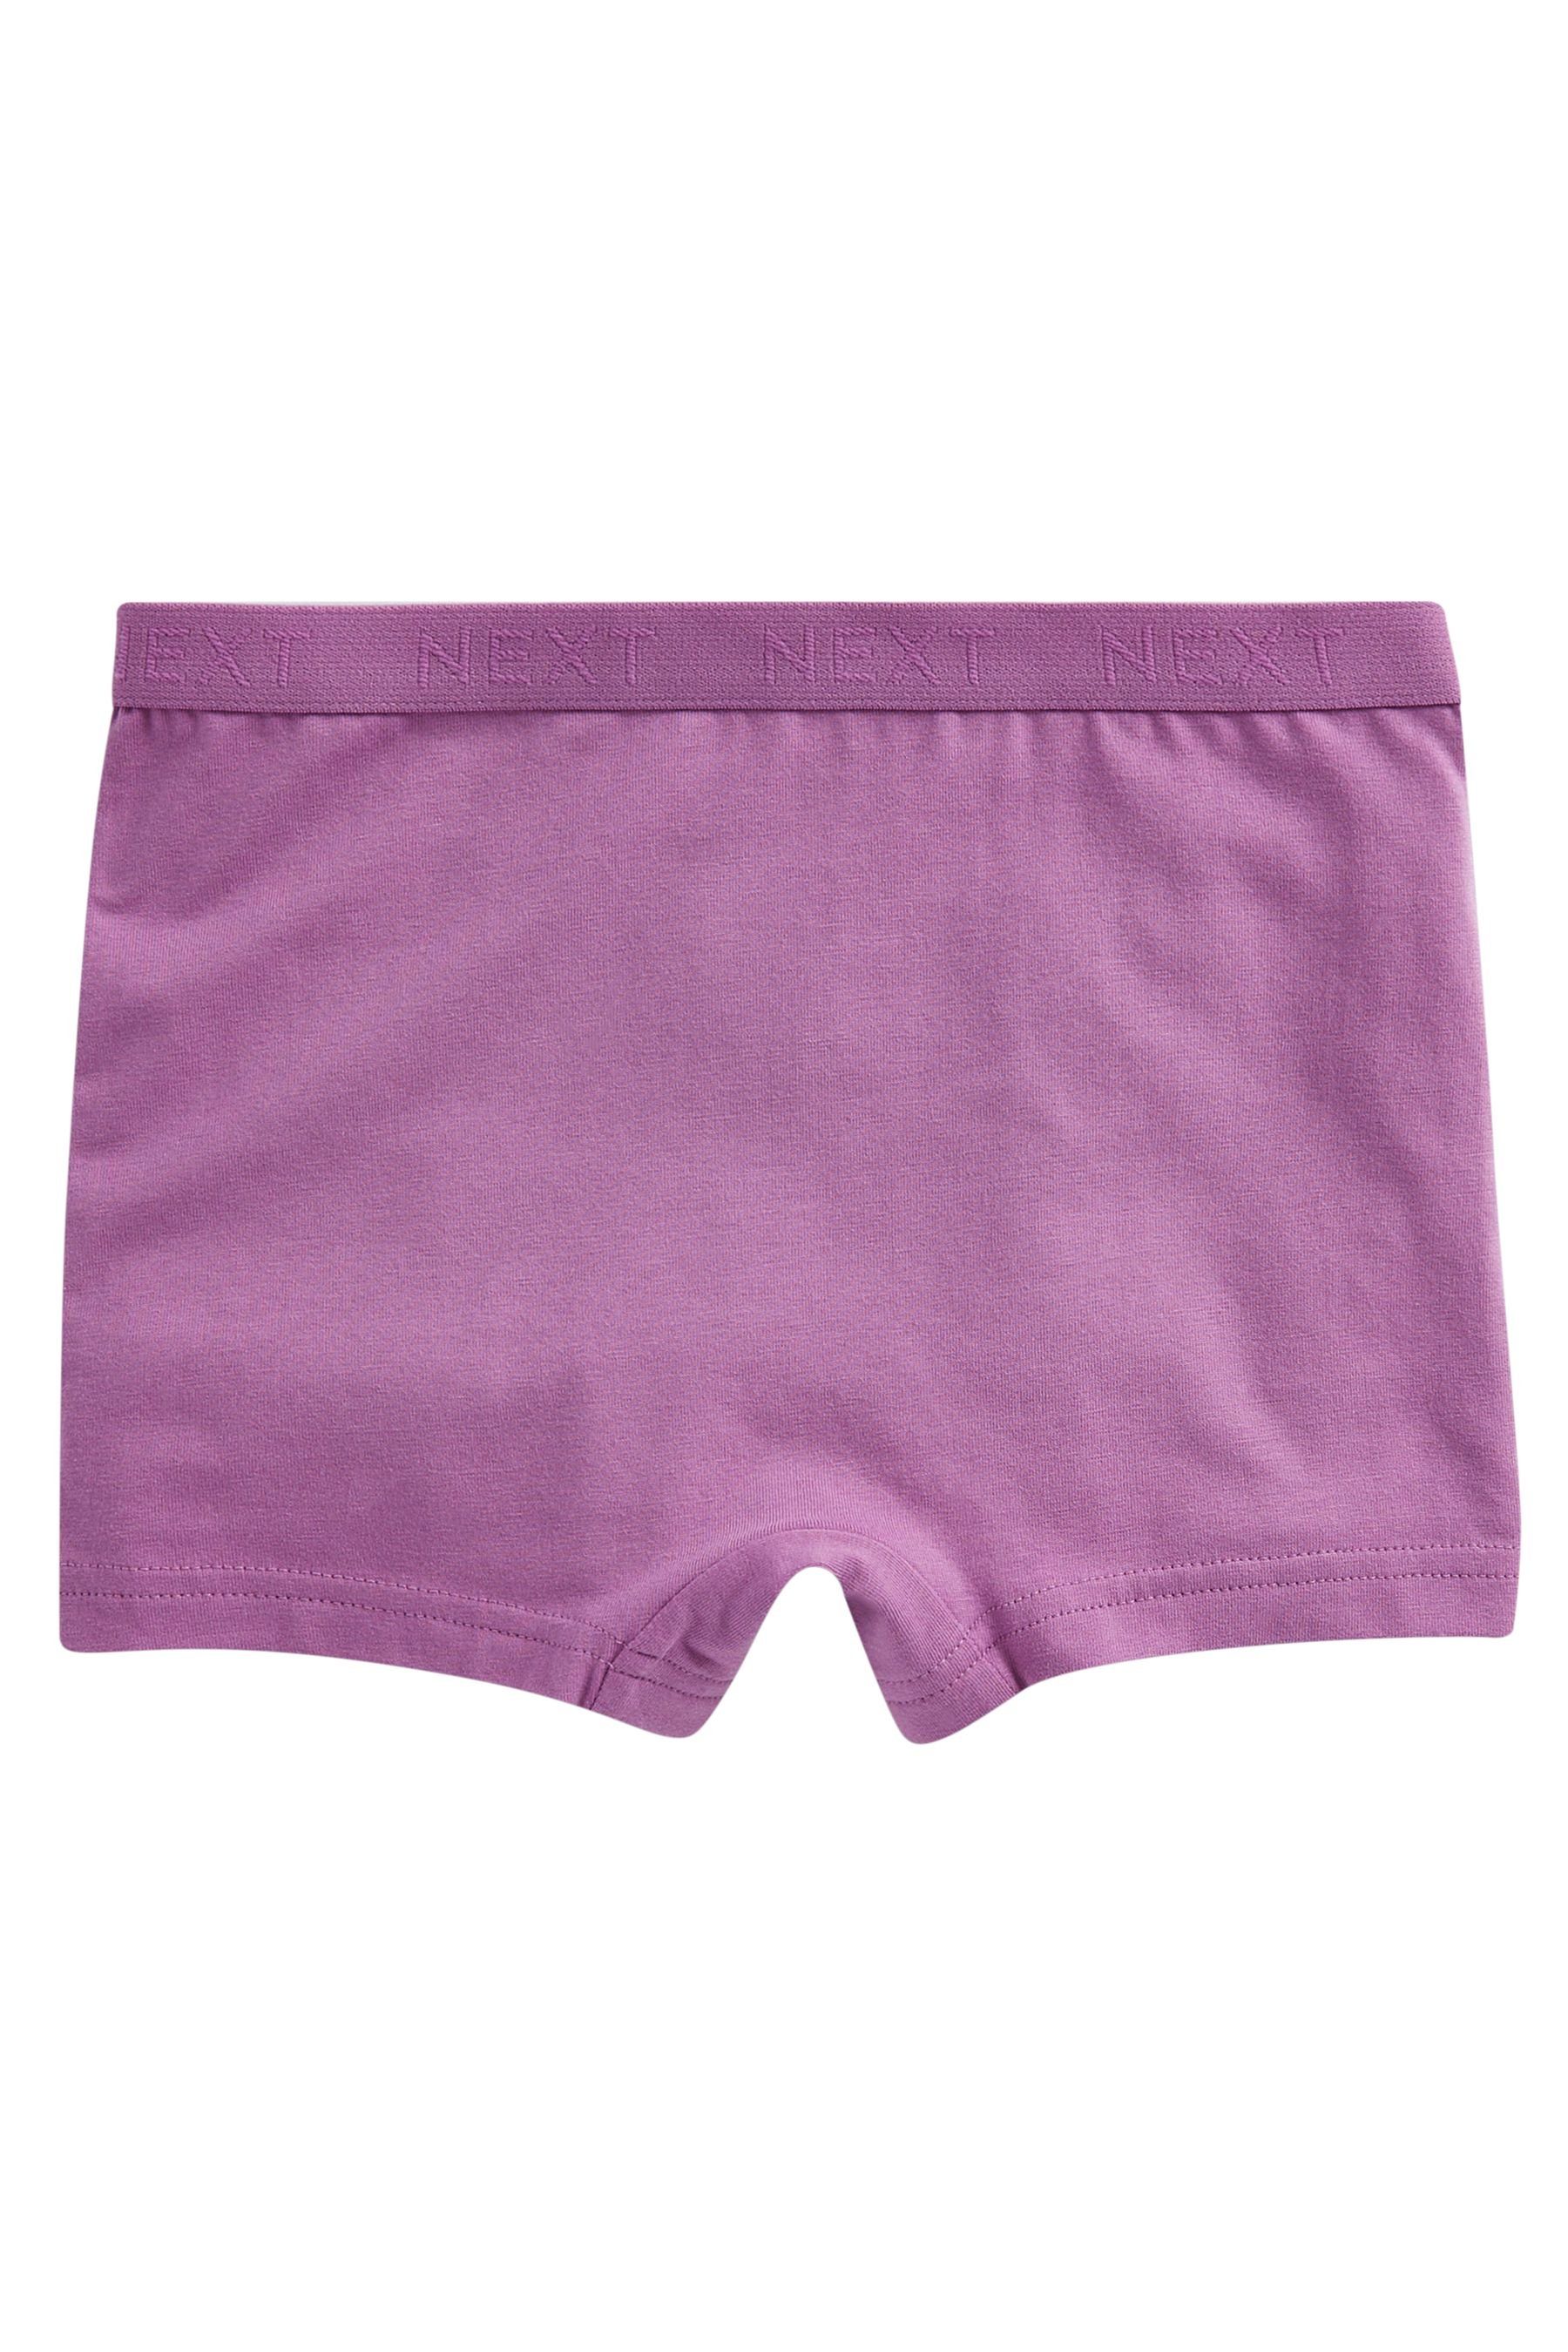 Next Schlüpfer Shorts mit Pink/Purple Blümchenmuster, 5er-Pack (5-St)